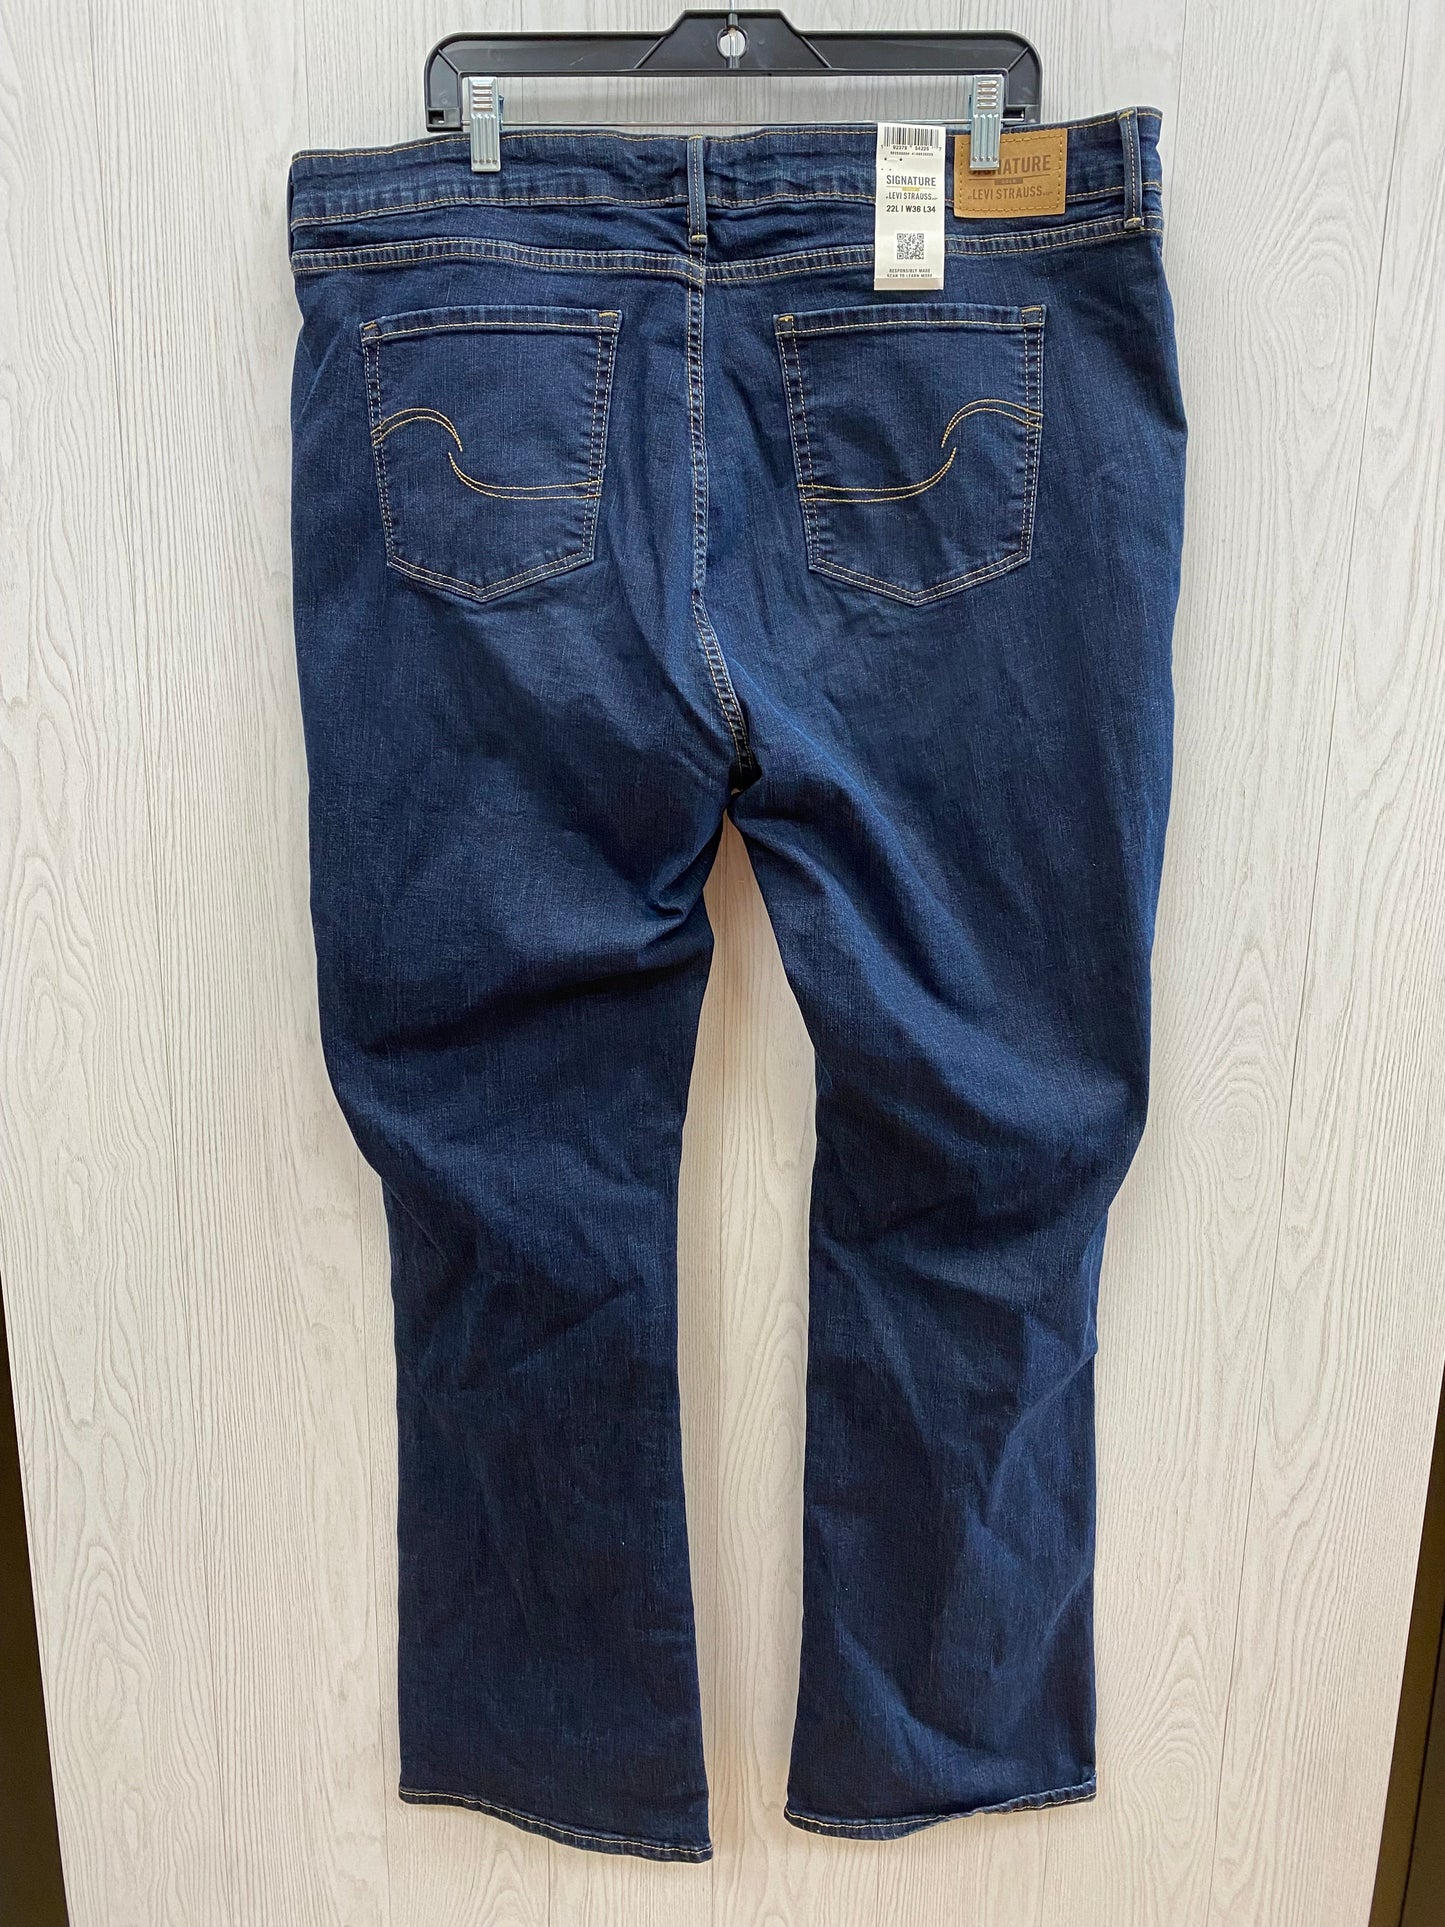 Blue Denim Jeans Boot Cut Levis, Size 22